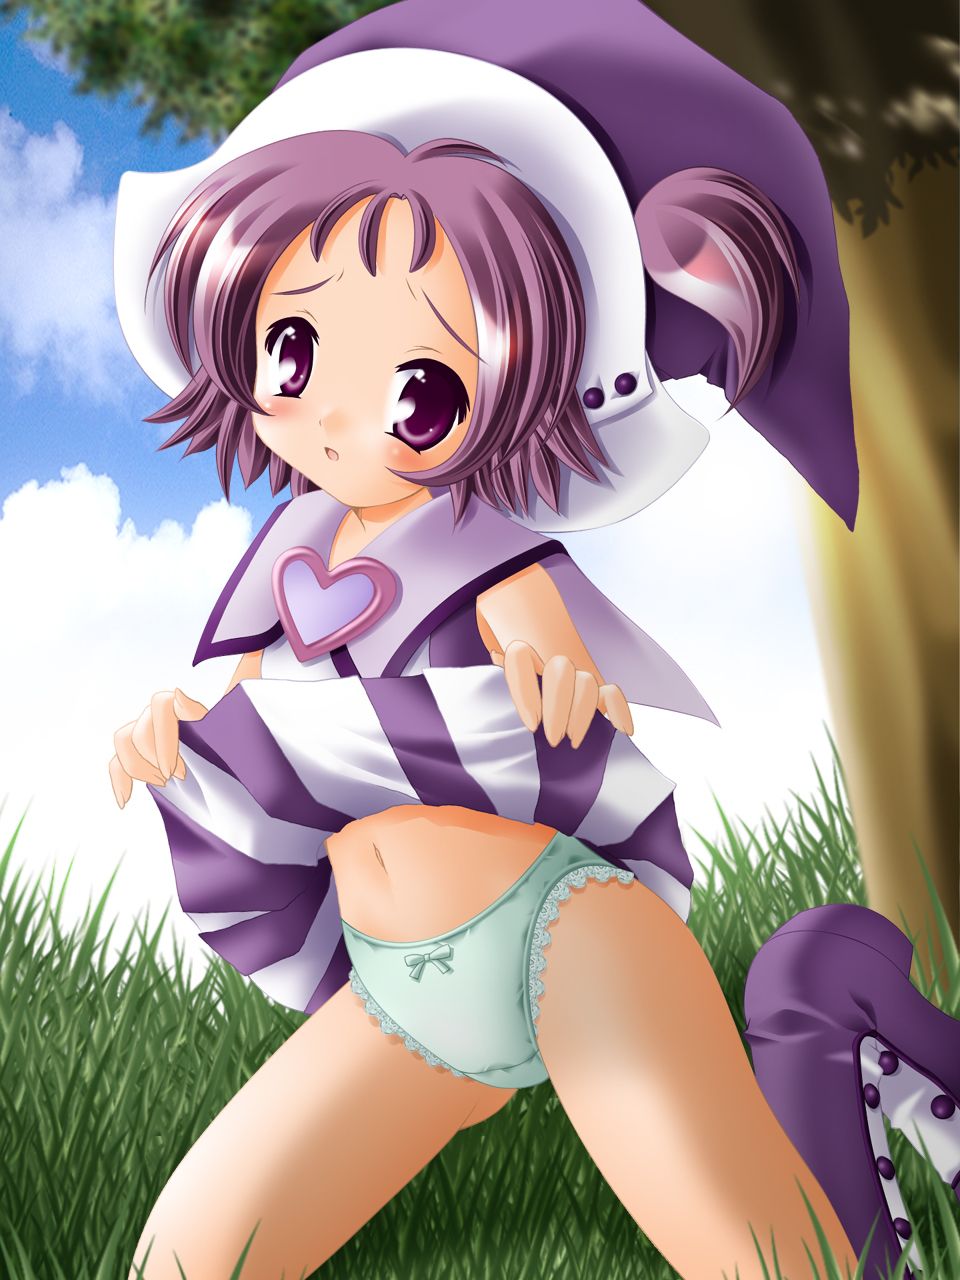 [Segawa Onpu-chan (Oja witch Domi)] JS Lori magical girl of Oja witch Domi, secondary erotic image of MAHdo magical girl Segawa Onpu-chan in charge of purple 1